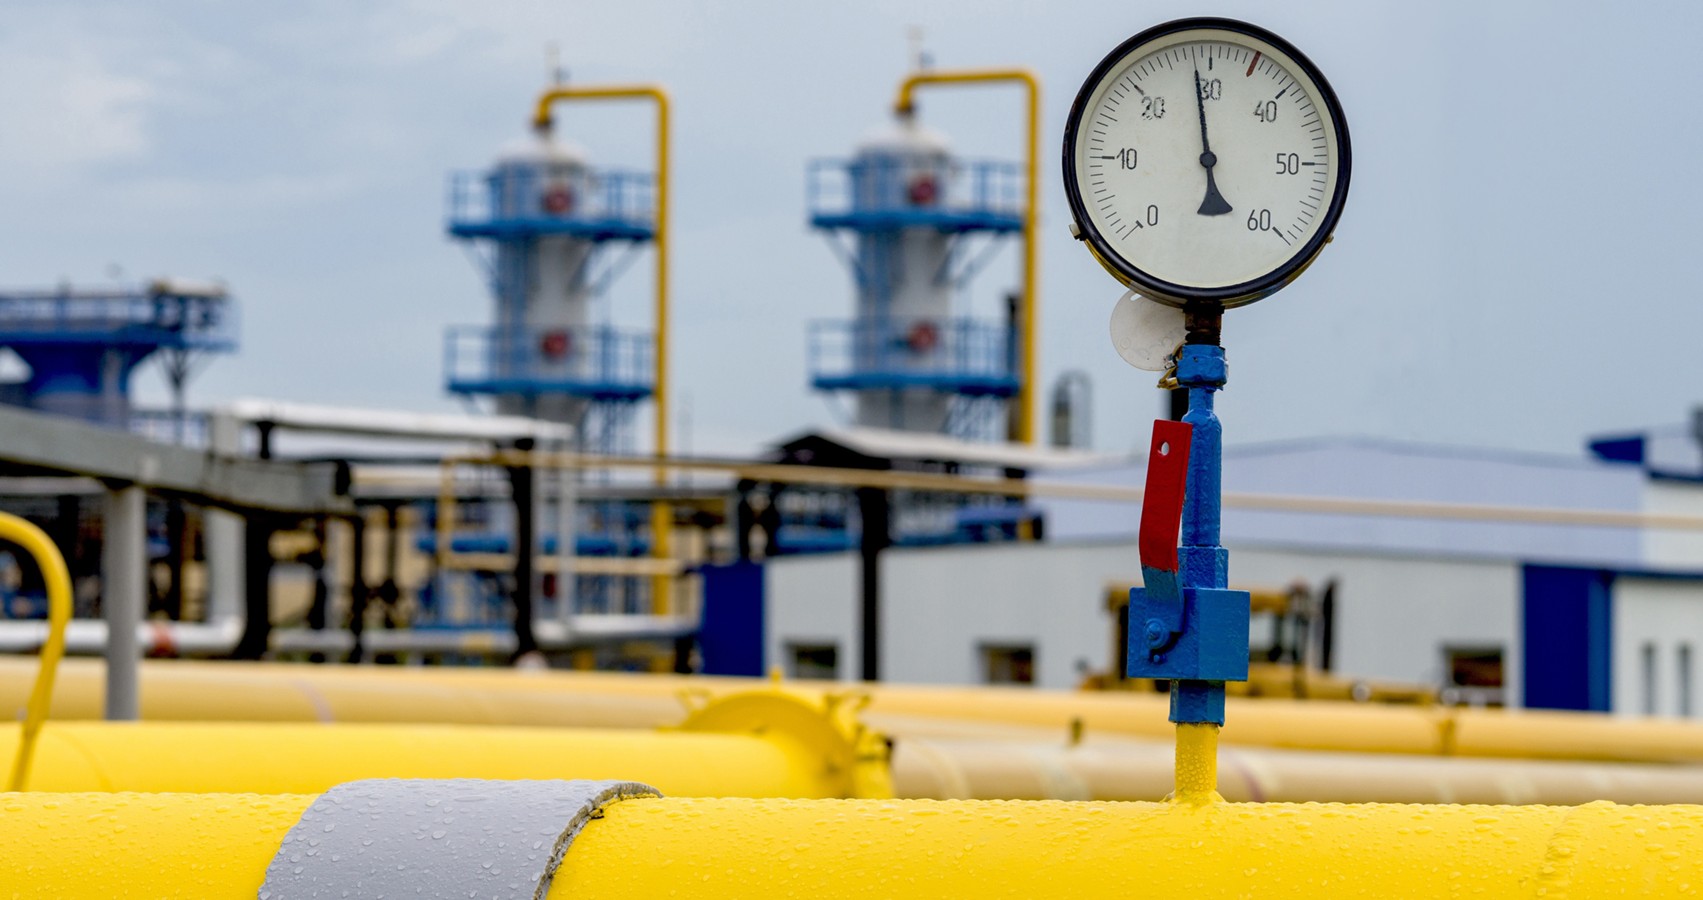 Европейский Союз разработал план замещения газа из России, чтобы избавиться от энергетической зависимости.